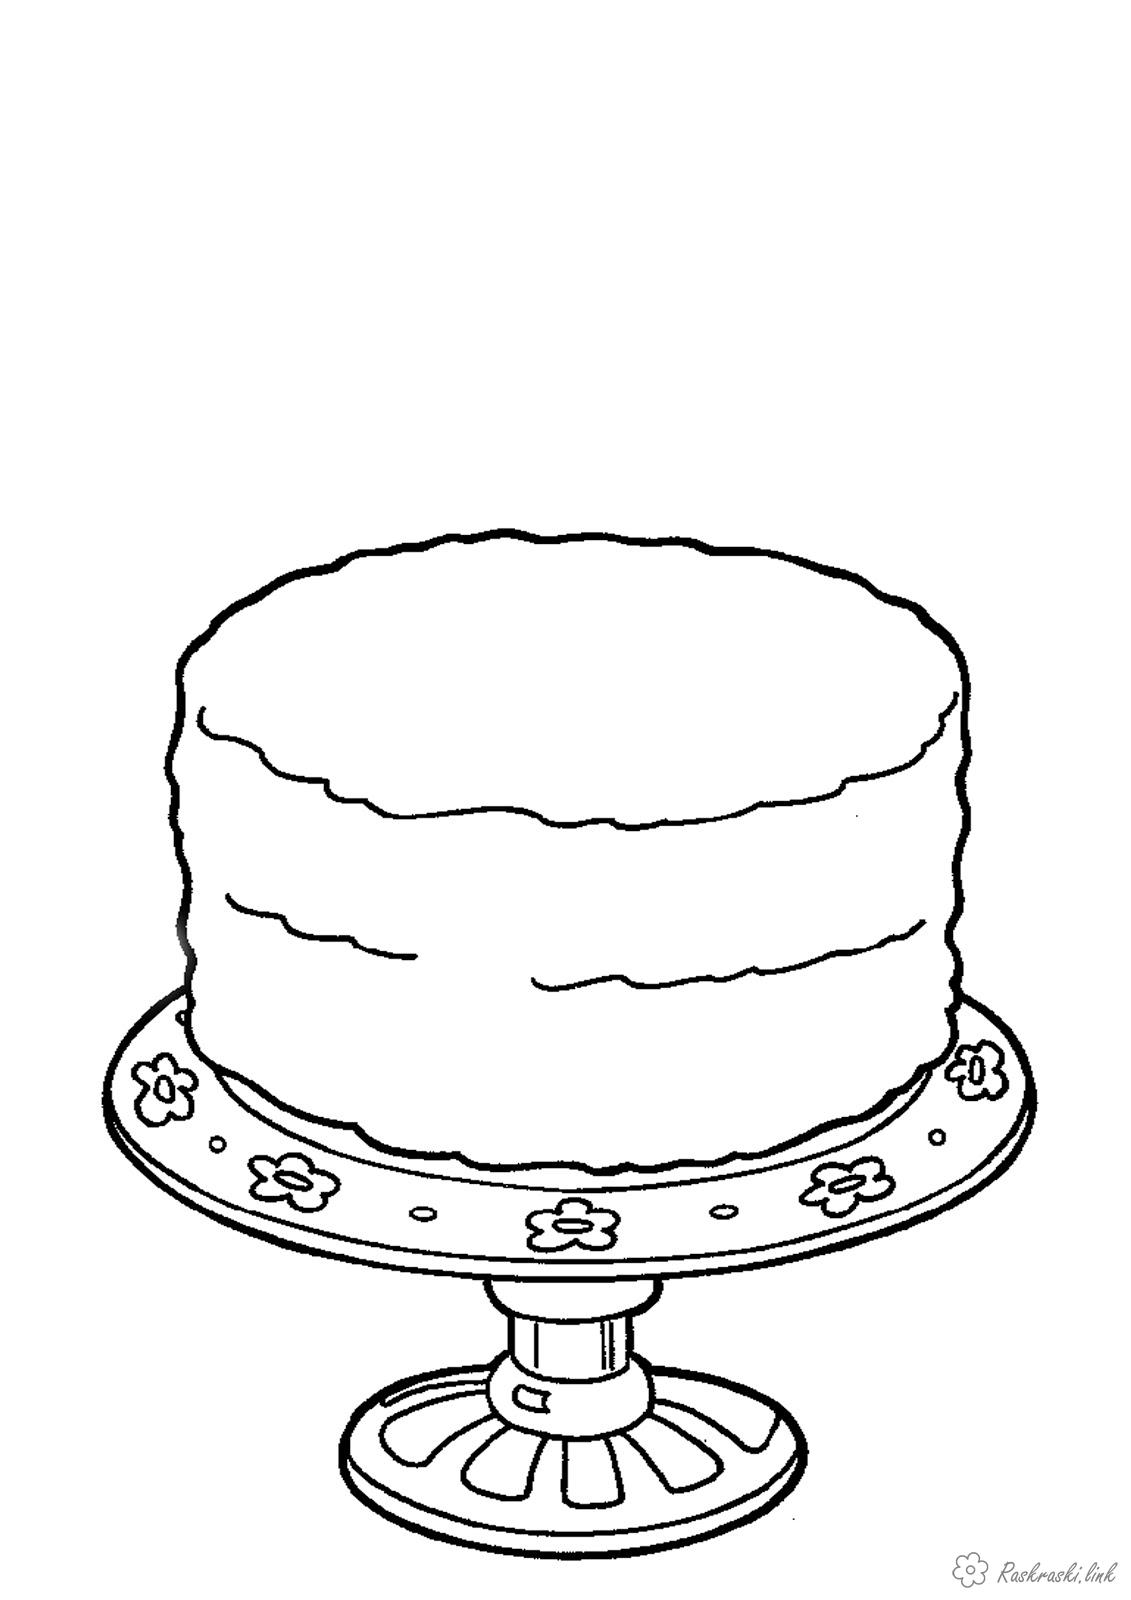 Раскраски Торты и пирожные - категория Праздники (торты, пирожные, сладости)